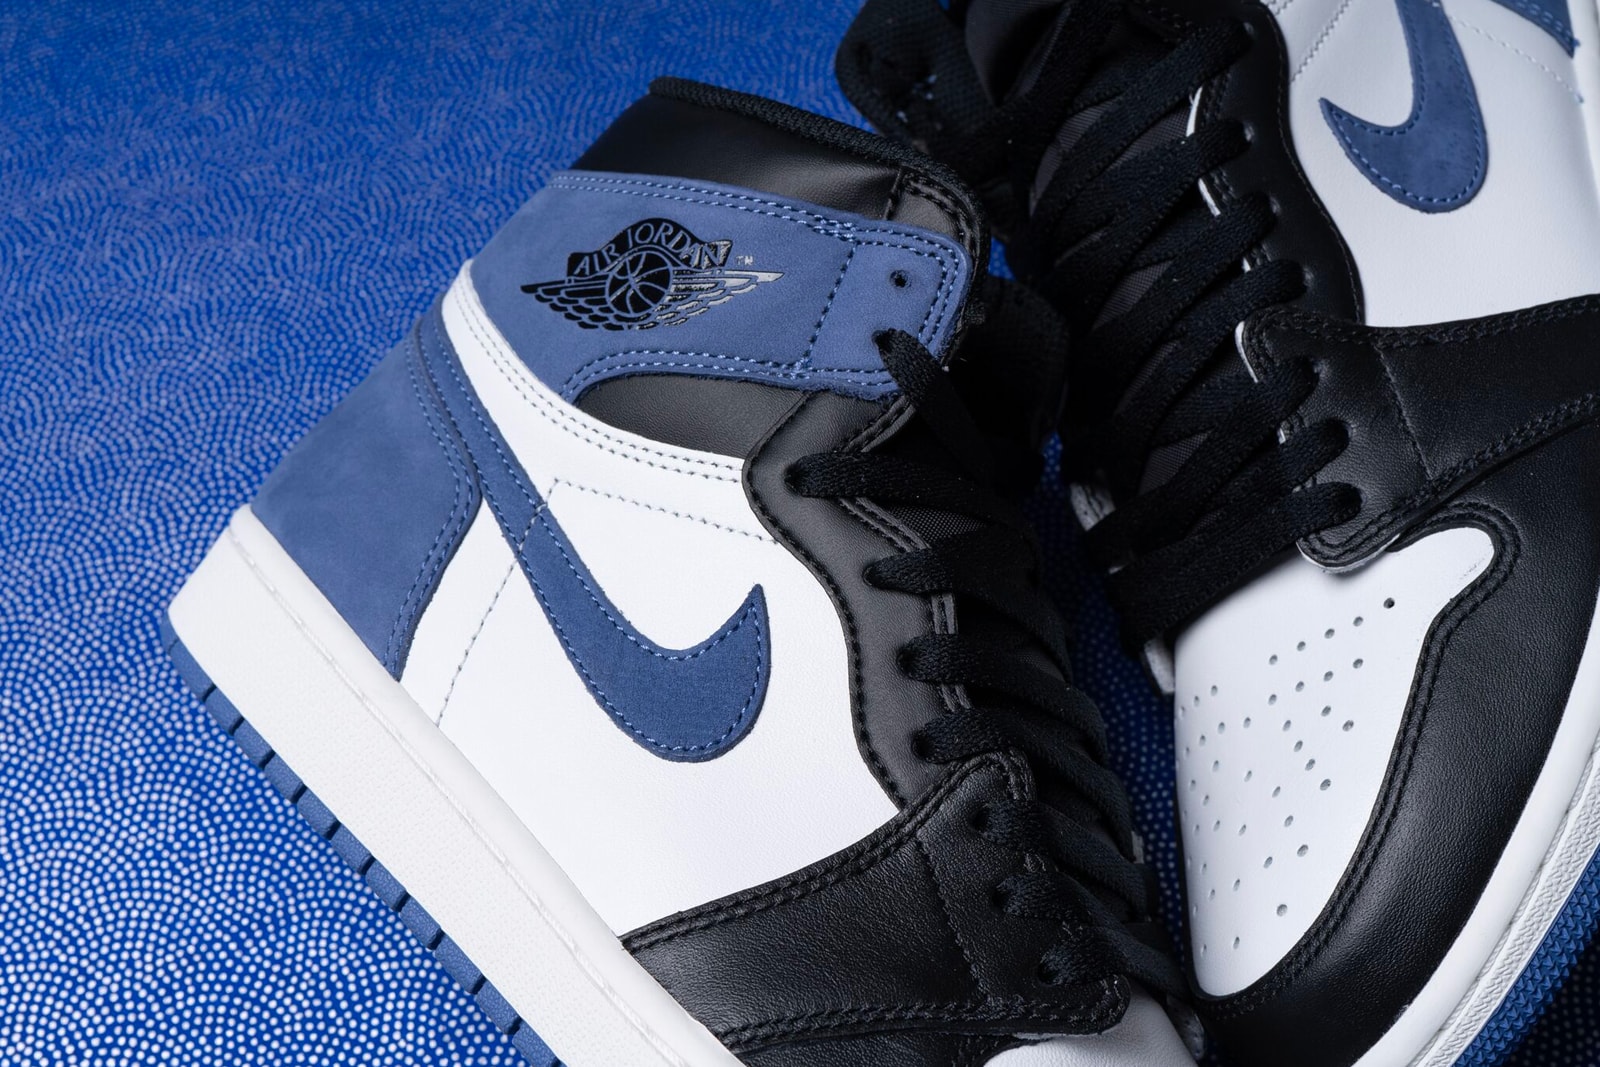 Air Jordan 1 Retro High "Blue Moon" colorway release date may 1 drop info sneakers footwear